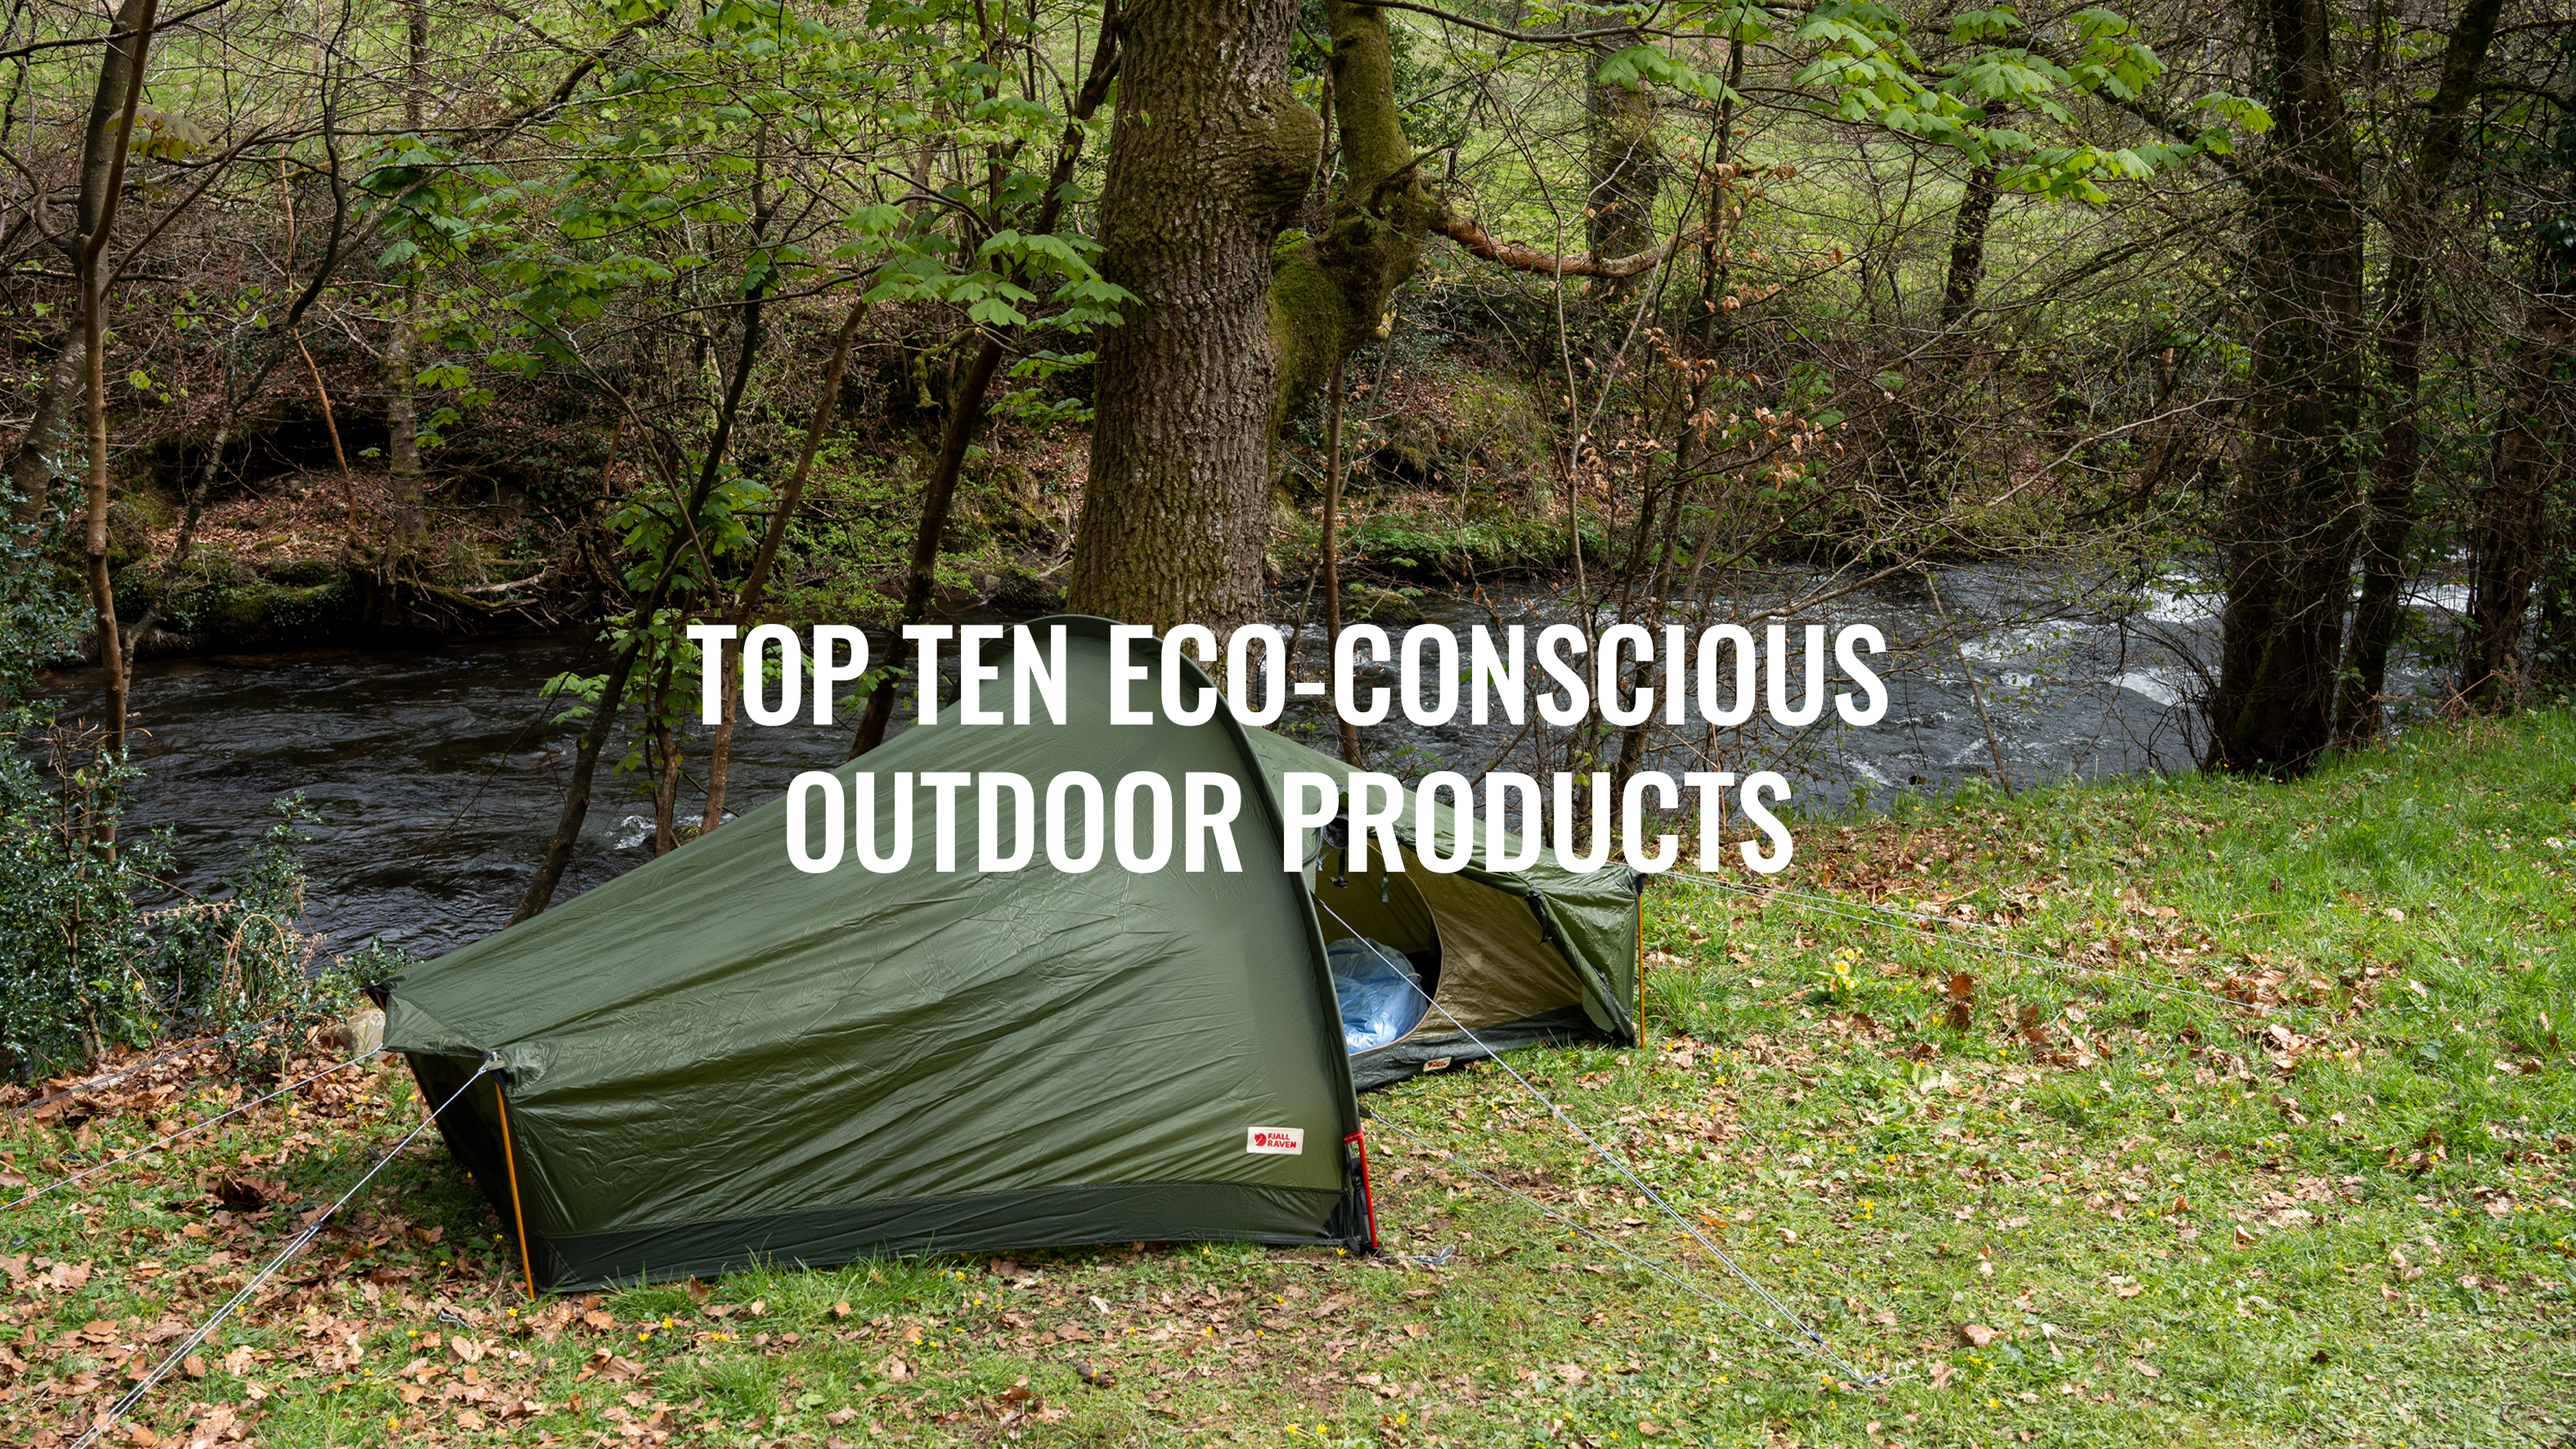 Trekitt’s Top Ten Eco-Conscious Outdoor Products